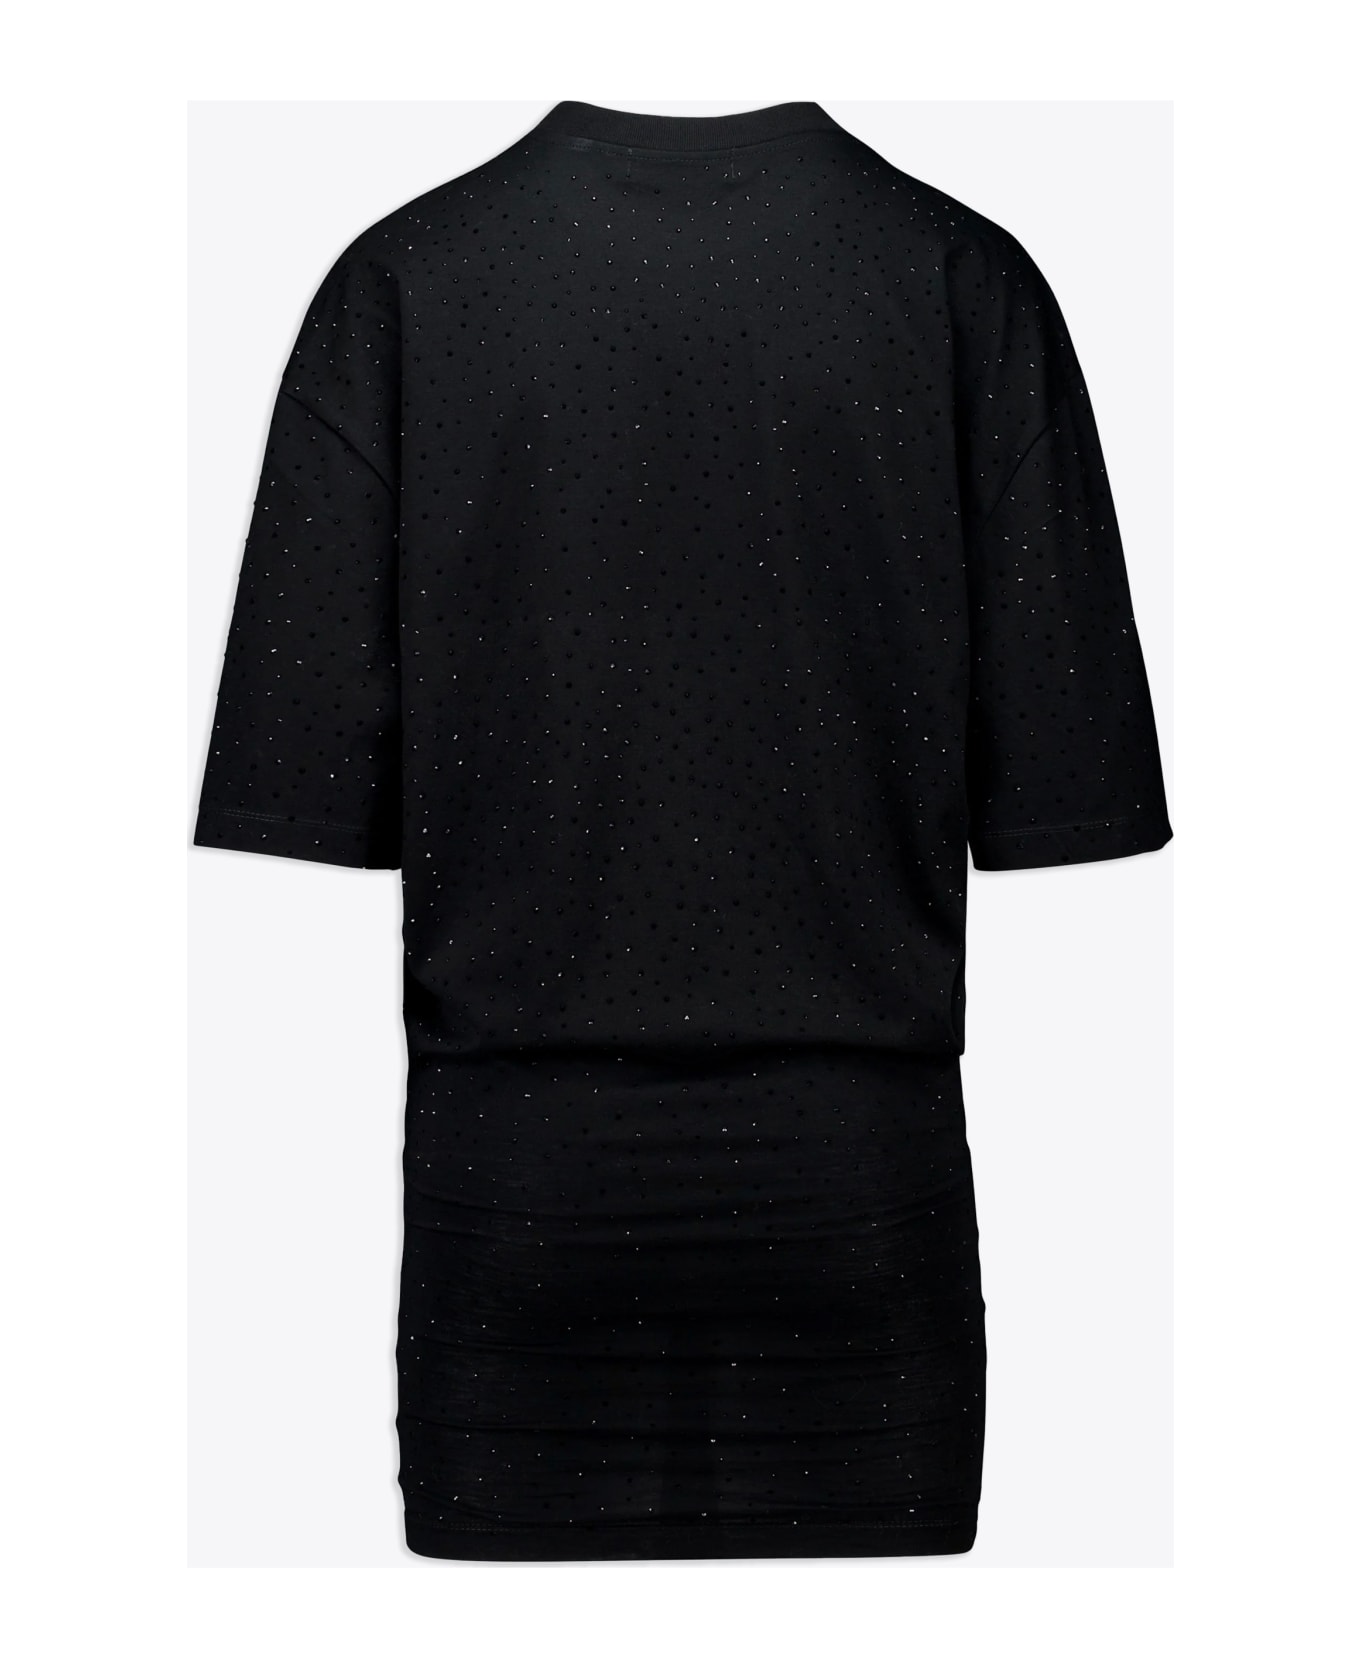 Laneus Jersey Dress Woman Black cotton mini dress with crystals - Jersey Mini Dress - Nero Tシャツ